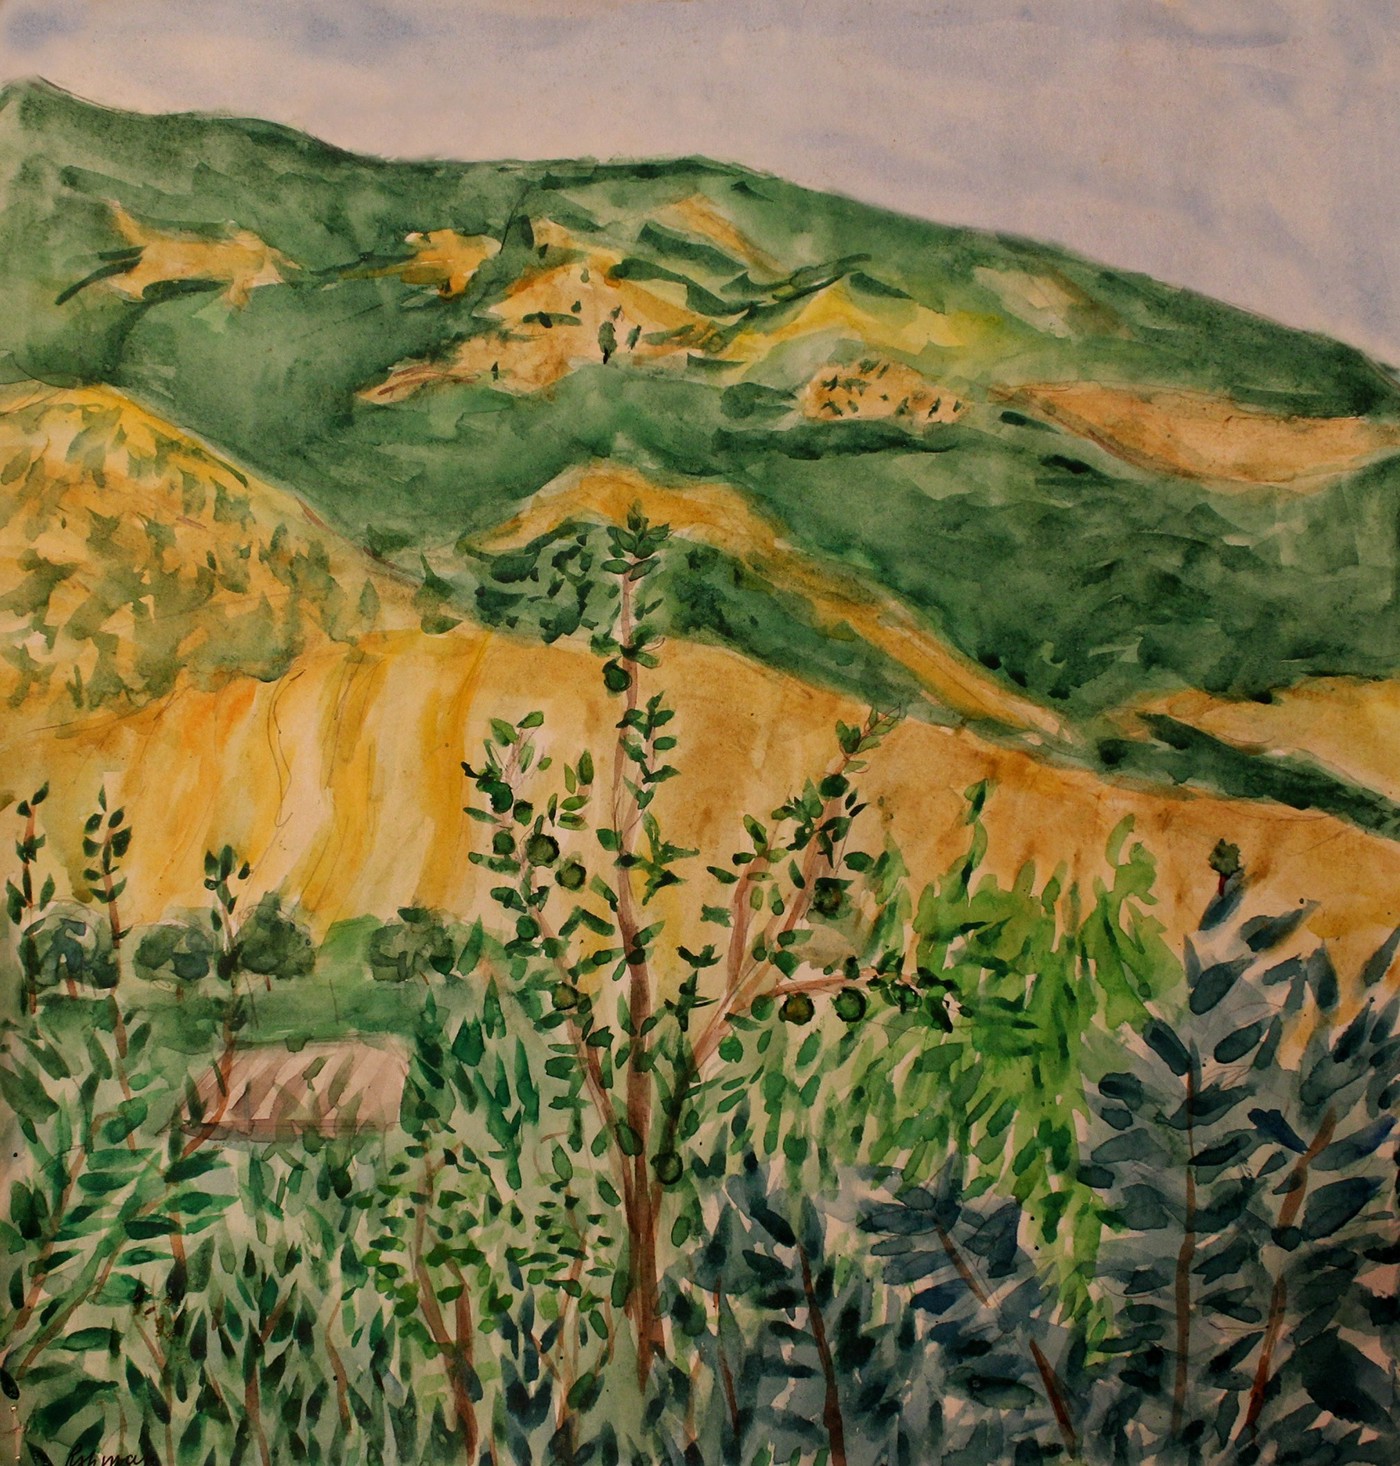 cardboard paper water color oil color felt pen color Landscape sketch village